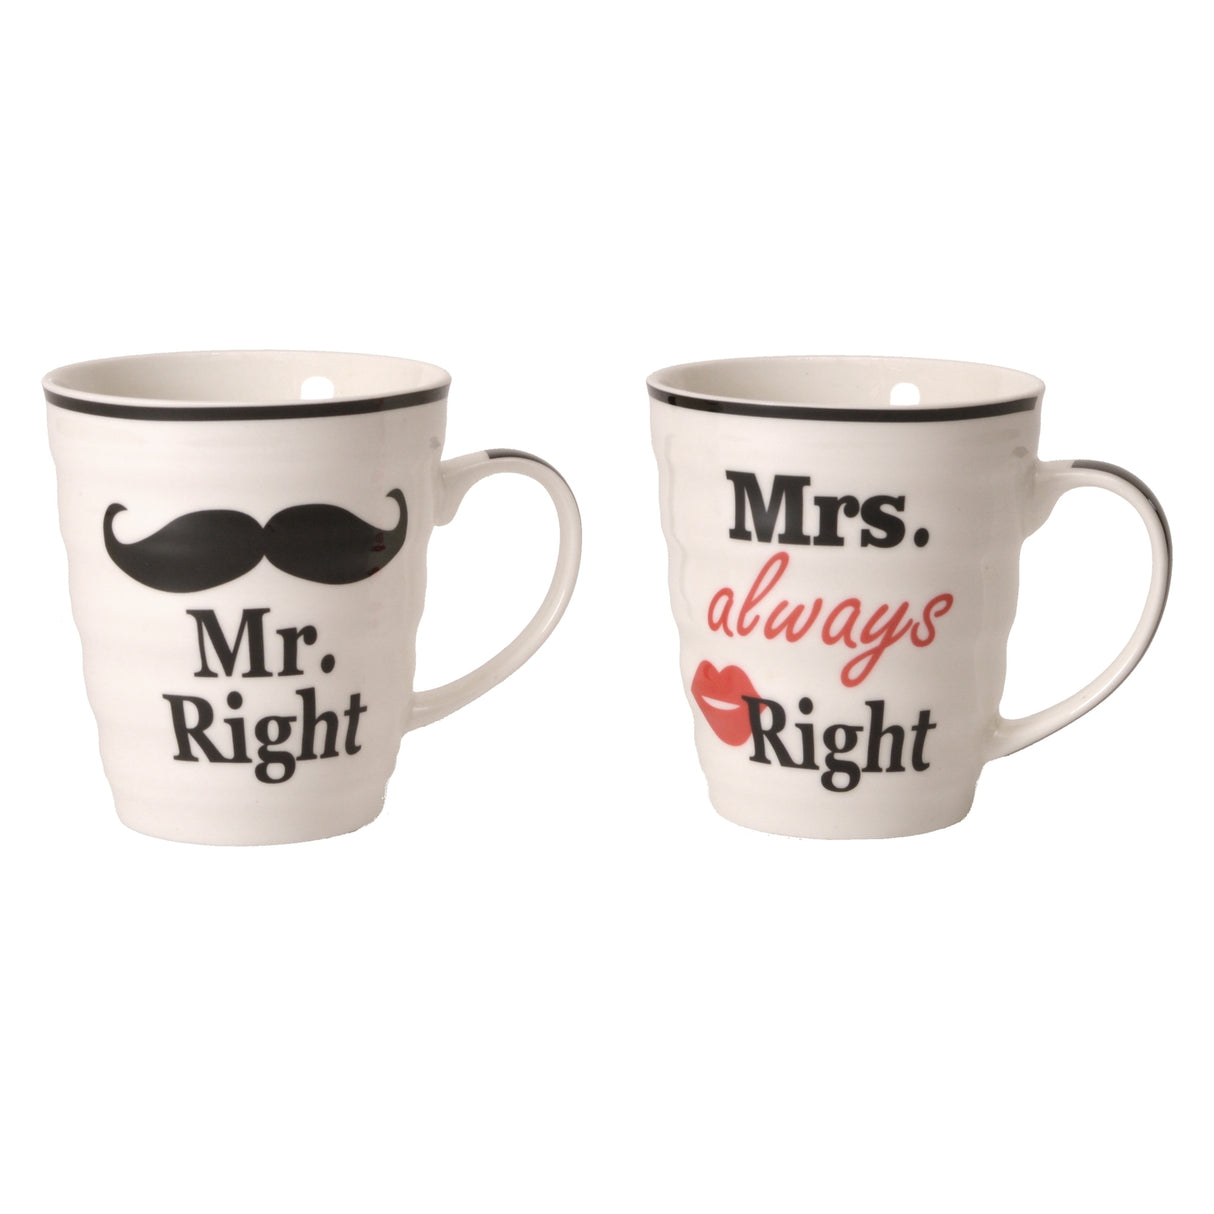 2er Set Mr. Right und Mrs. always Right Kaffeebecher in Geschenkverpackung